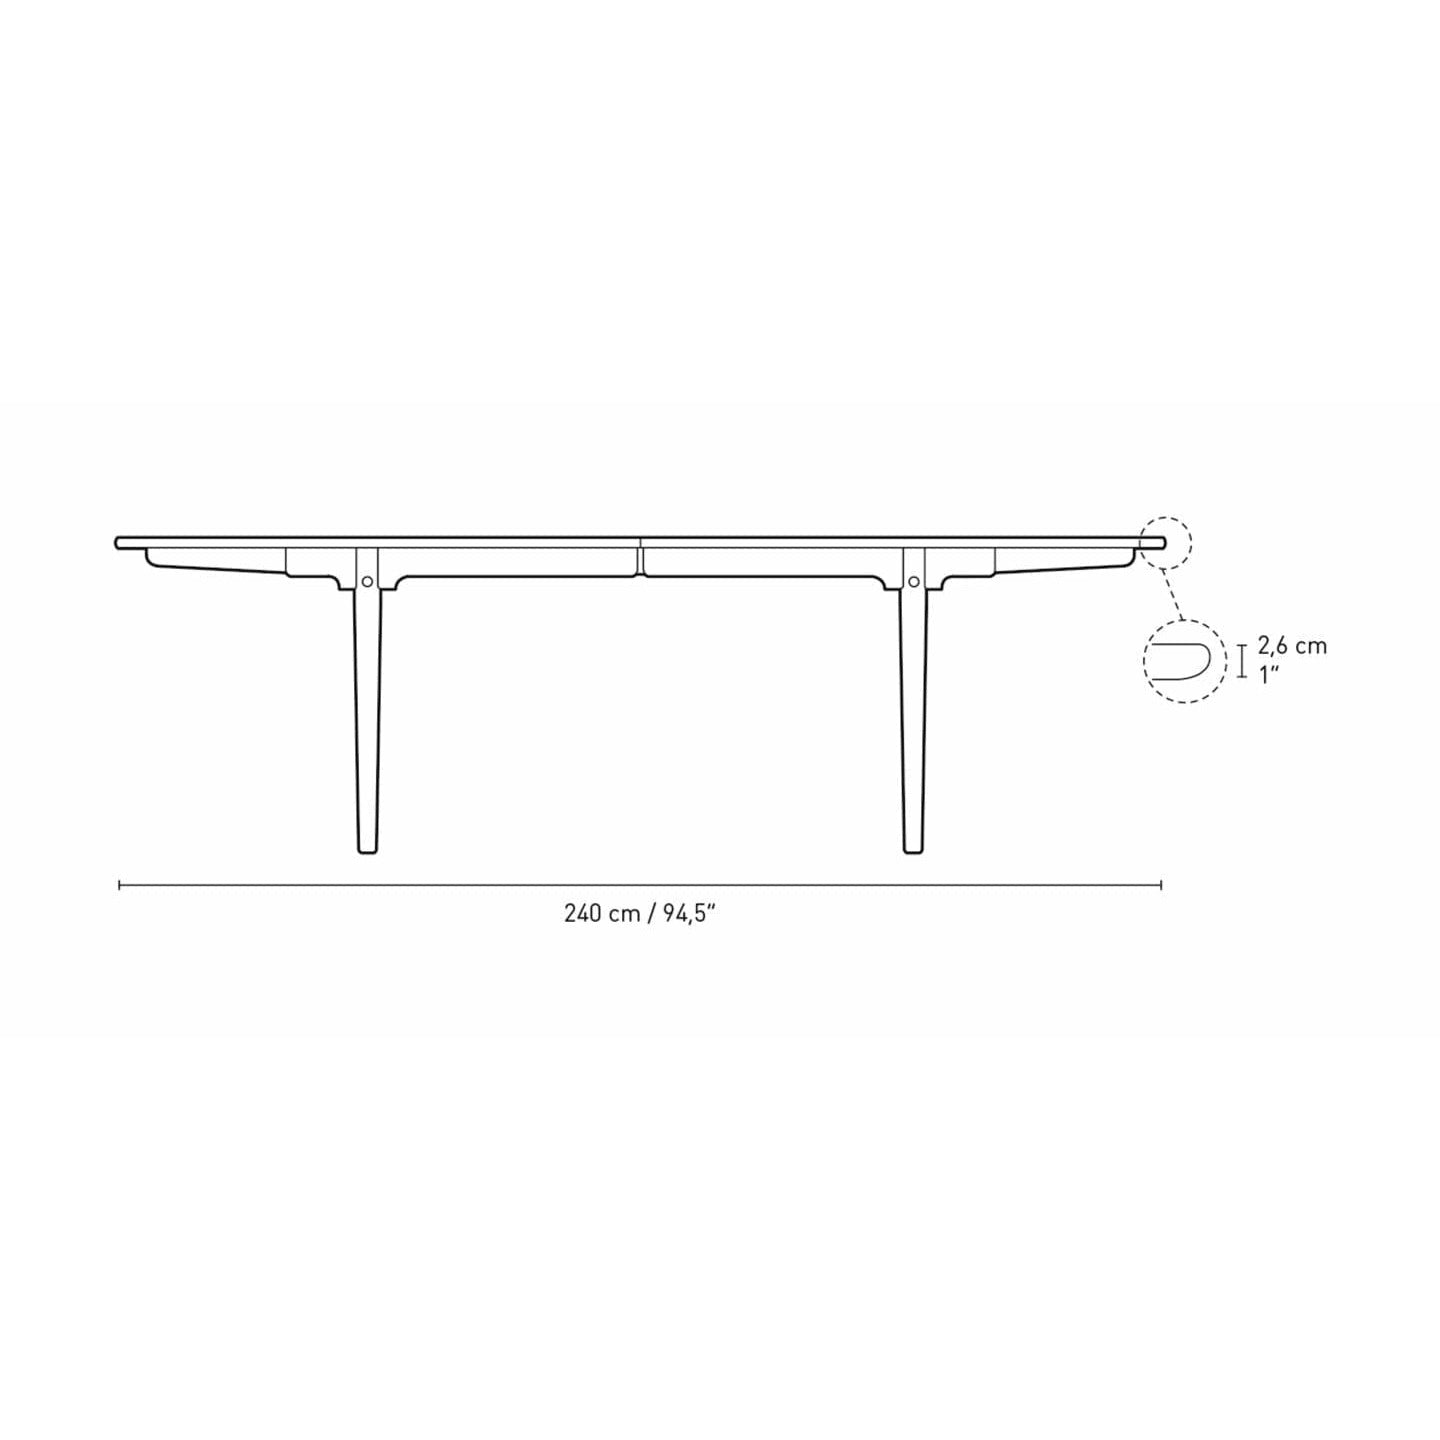 Carl Hansen CH339 matbord med dragning för 4 plattor, ekrökt olja